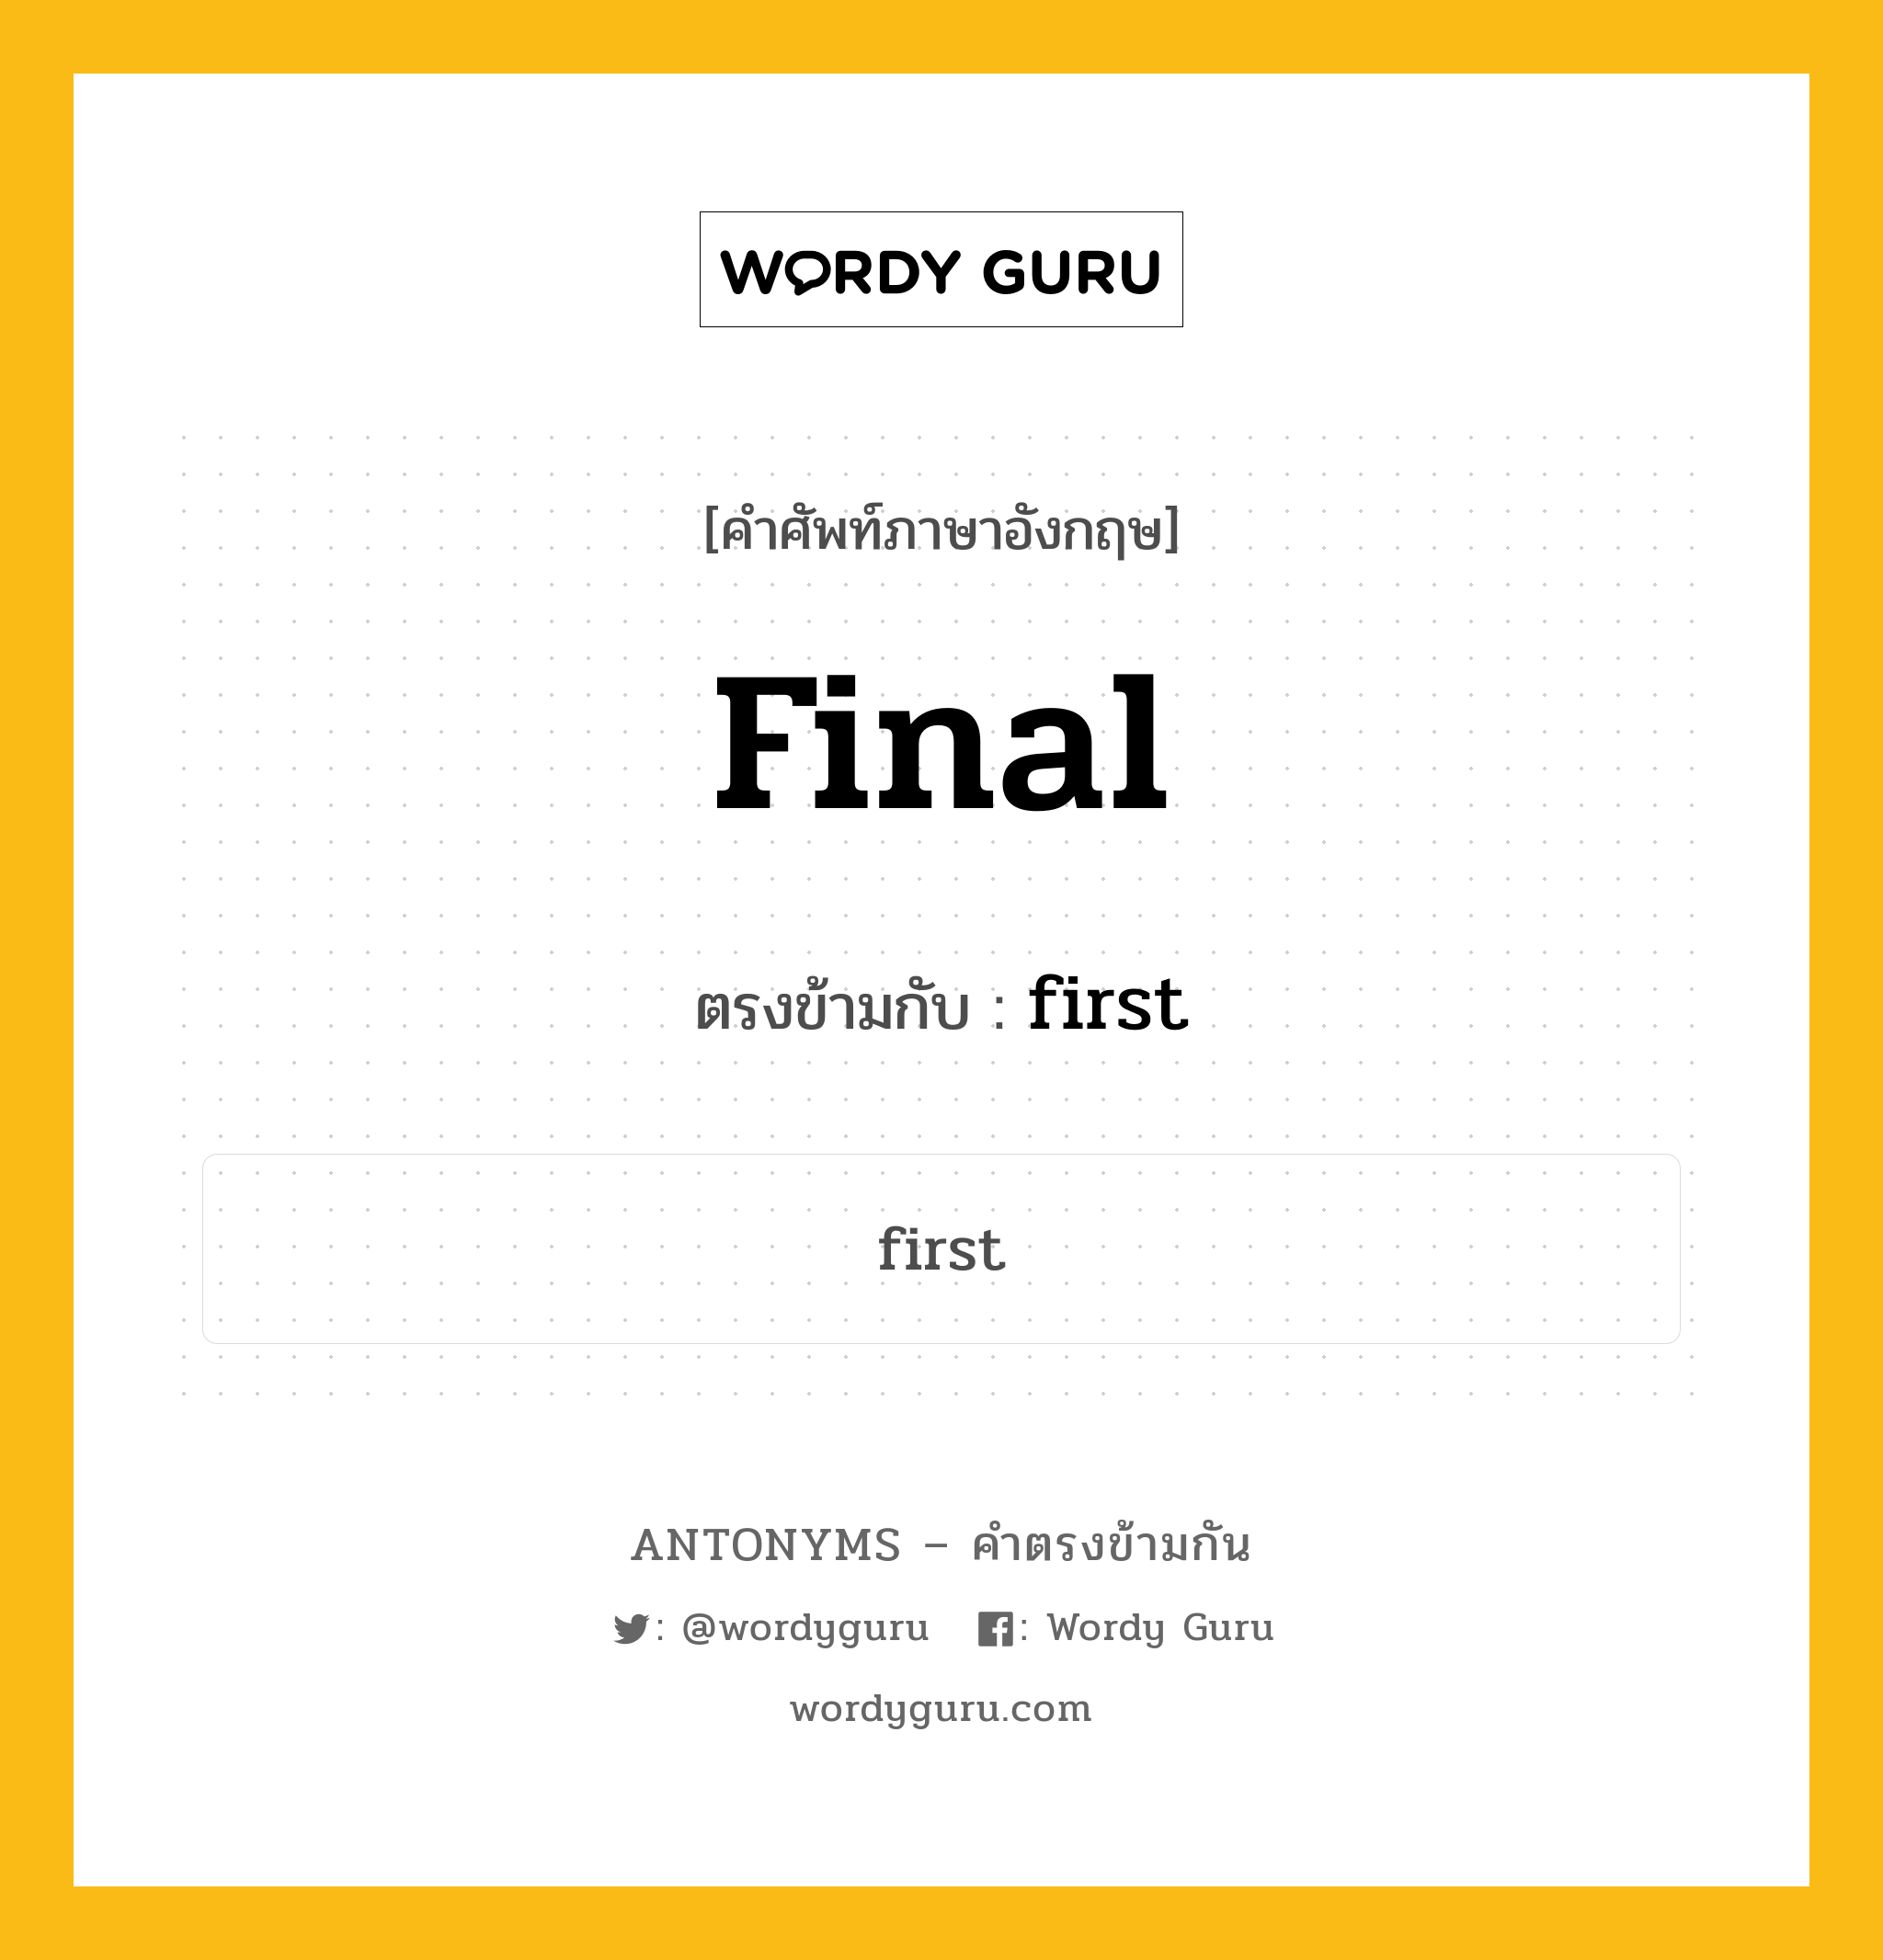 final เป็นคำตรงข้ามกับคำไหนบ้าง?, คำศัพท์ภาษาอังกฤษ final ตรงข้ามกับ first หมวด first